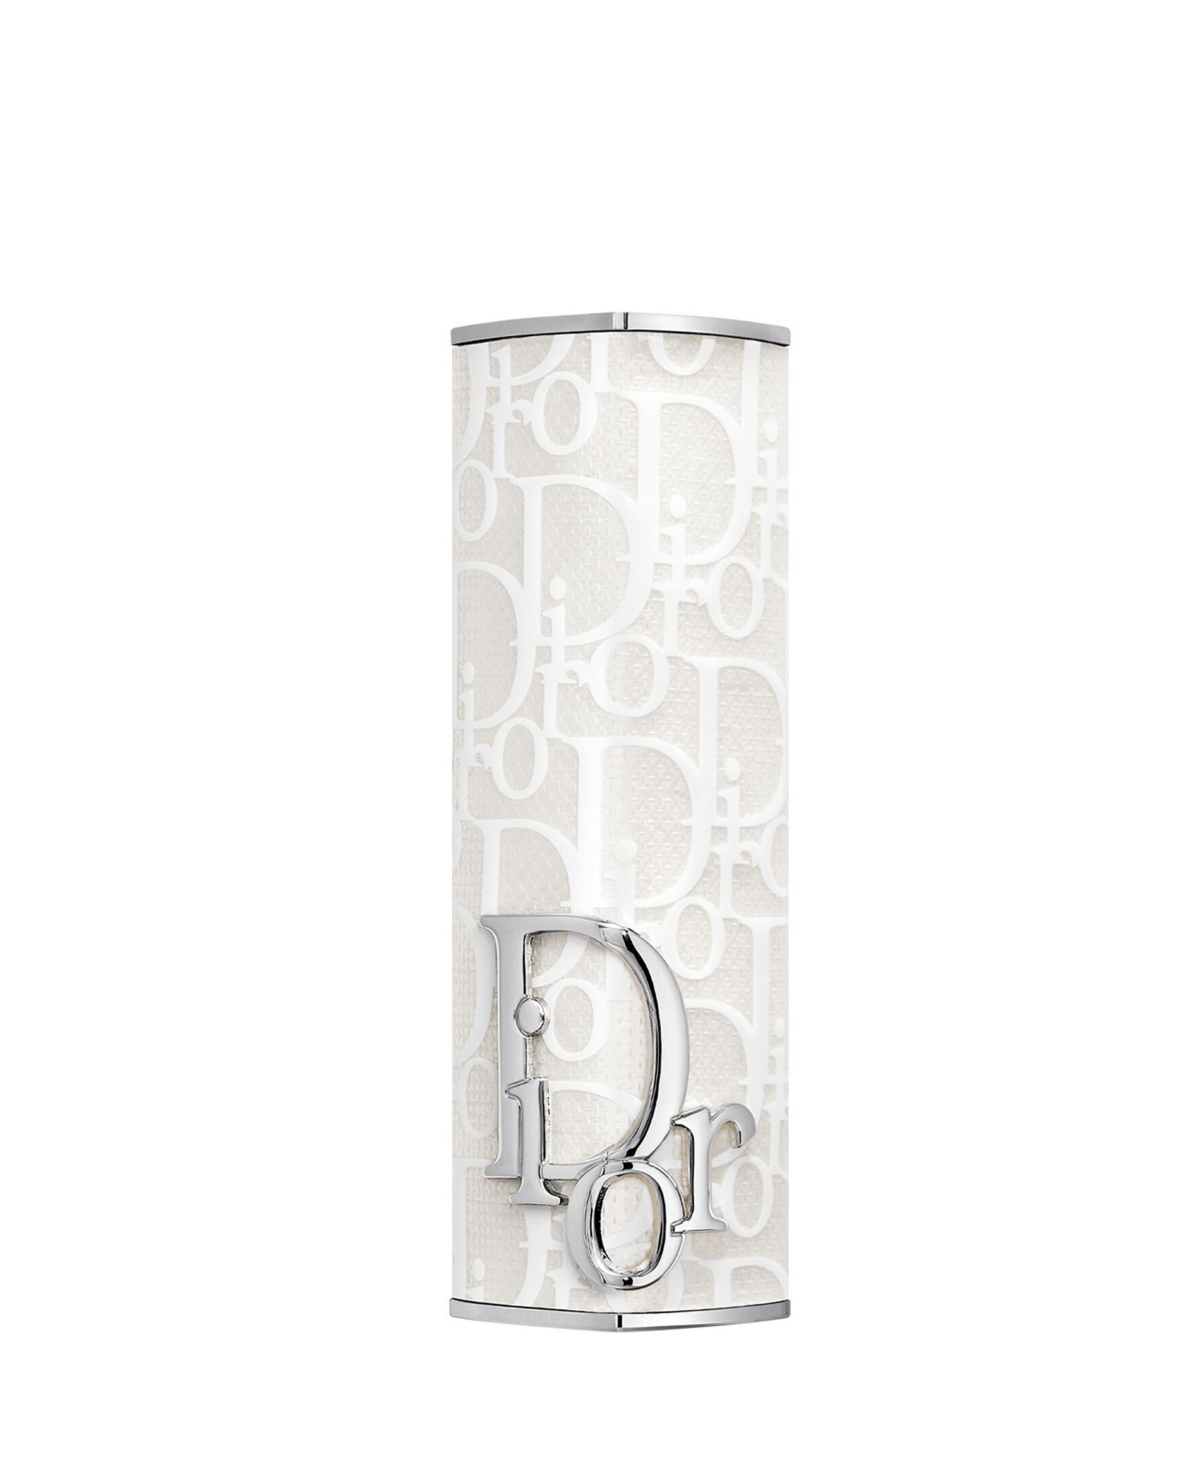 Dior Addict Refillable Couture Lipstick Case In White Canvas